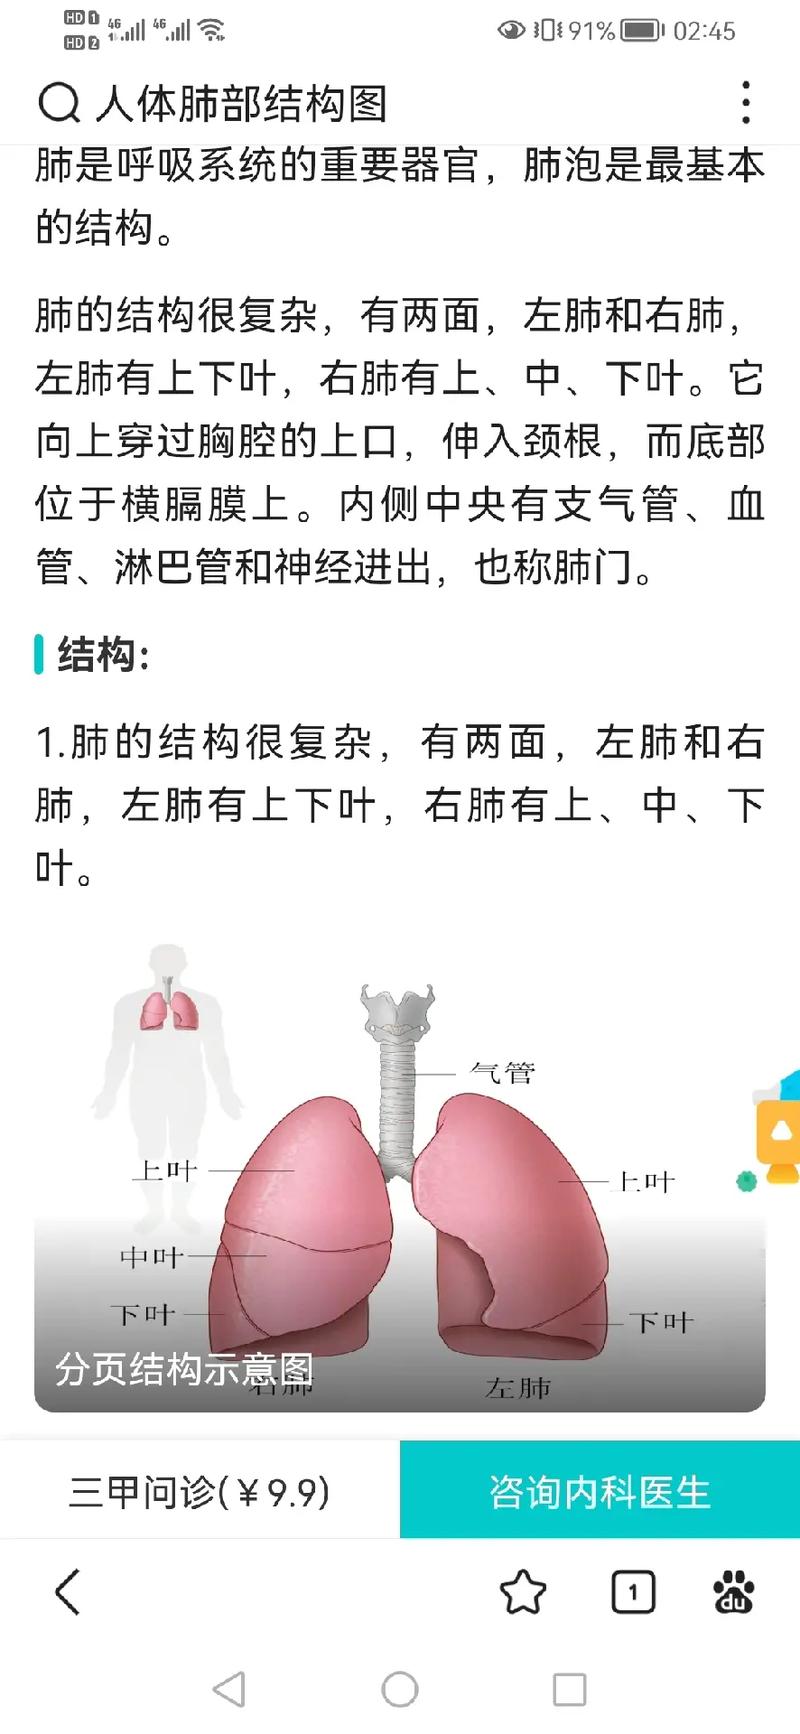 人体肺部结构图的相关图片